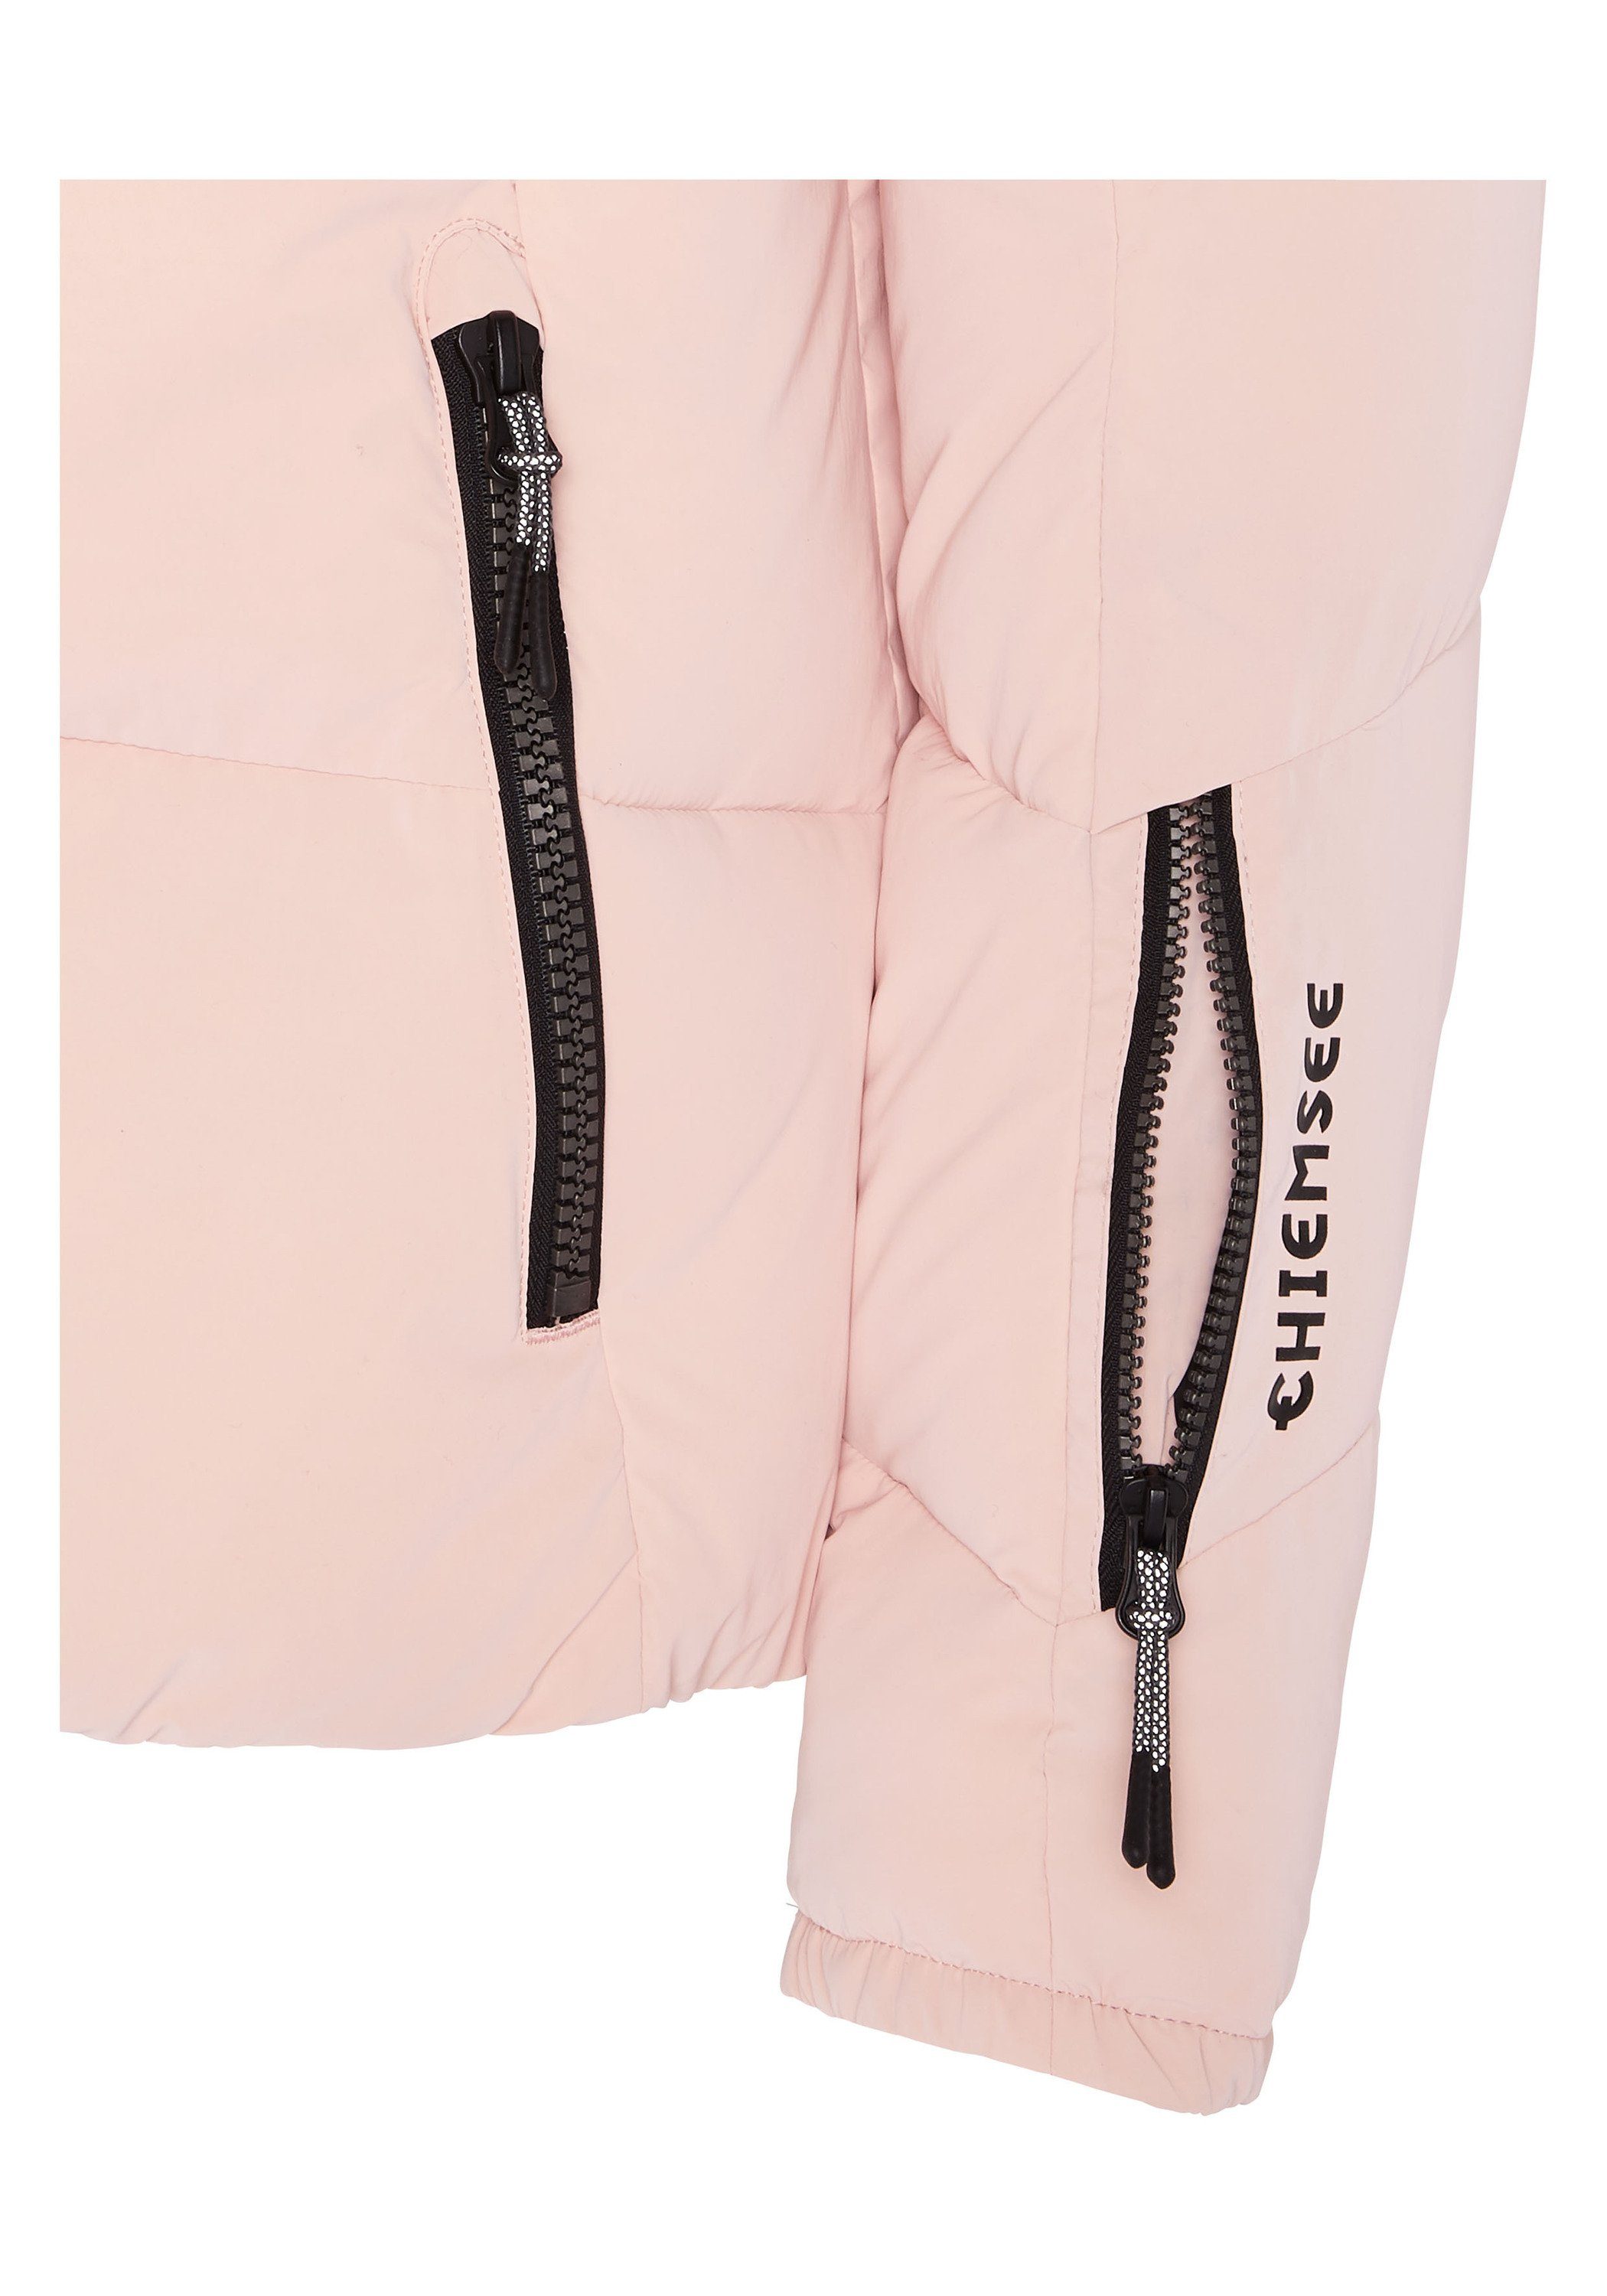 mit Skijacke 1 Reißverschlusstaschen Skijacke rosa hell Chiemsee